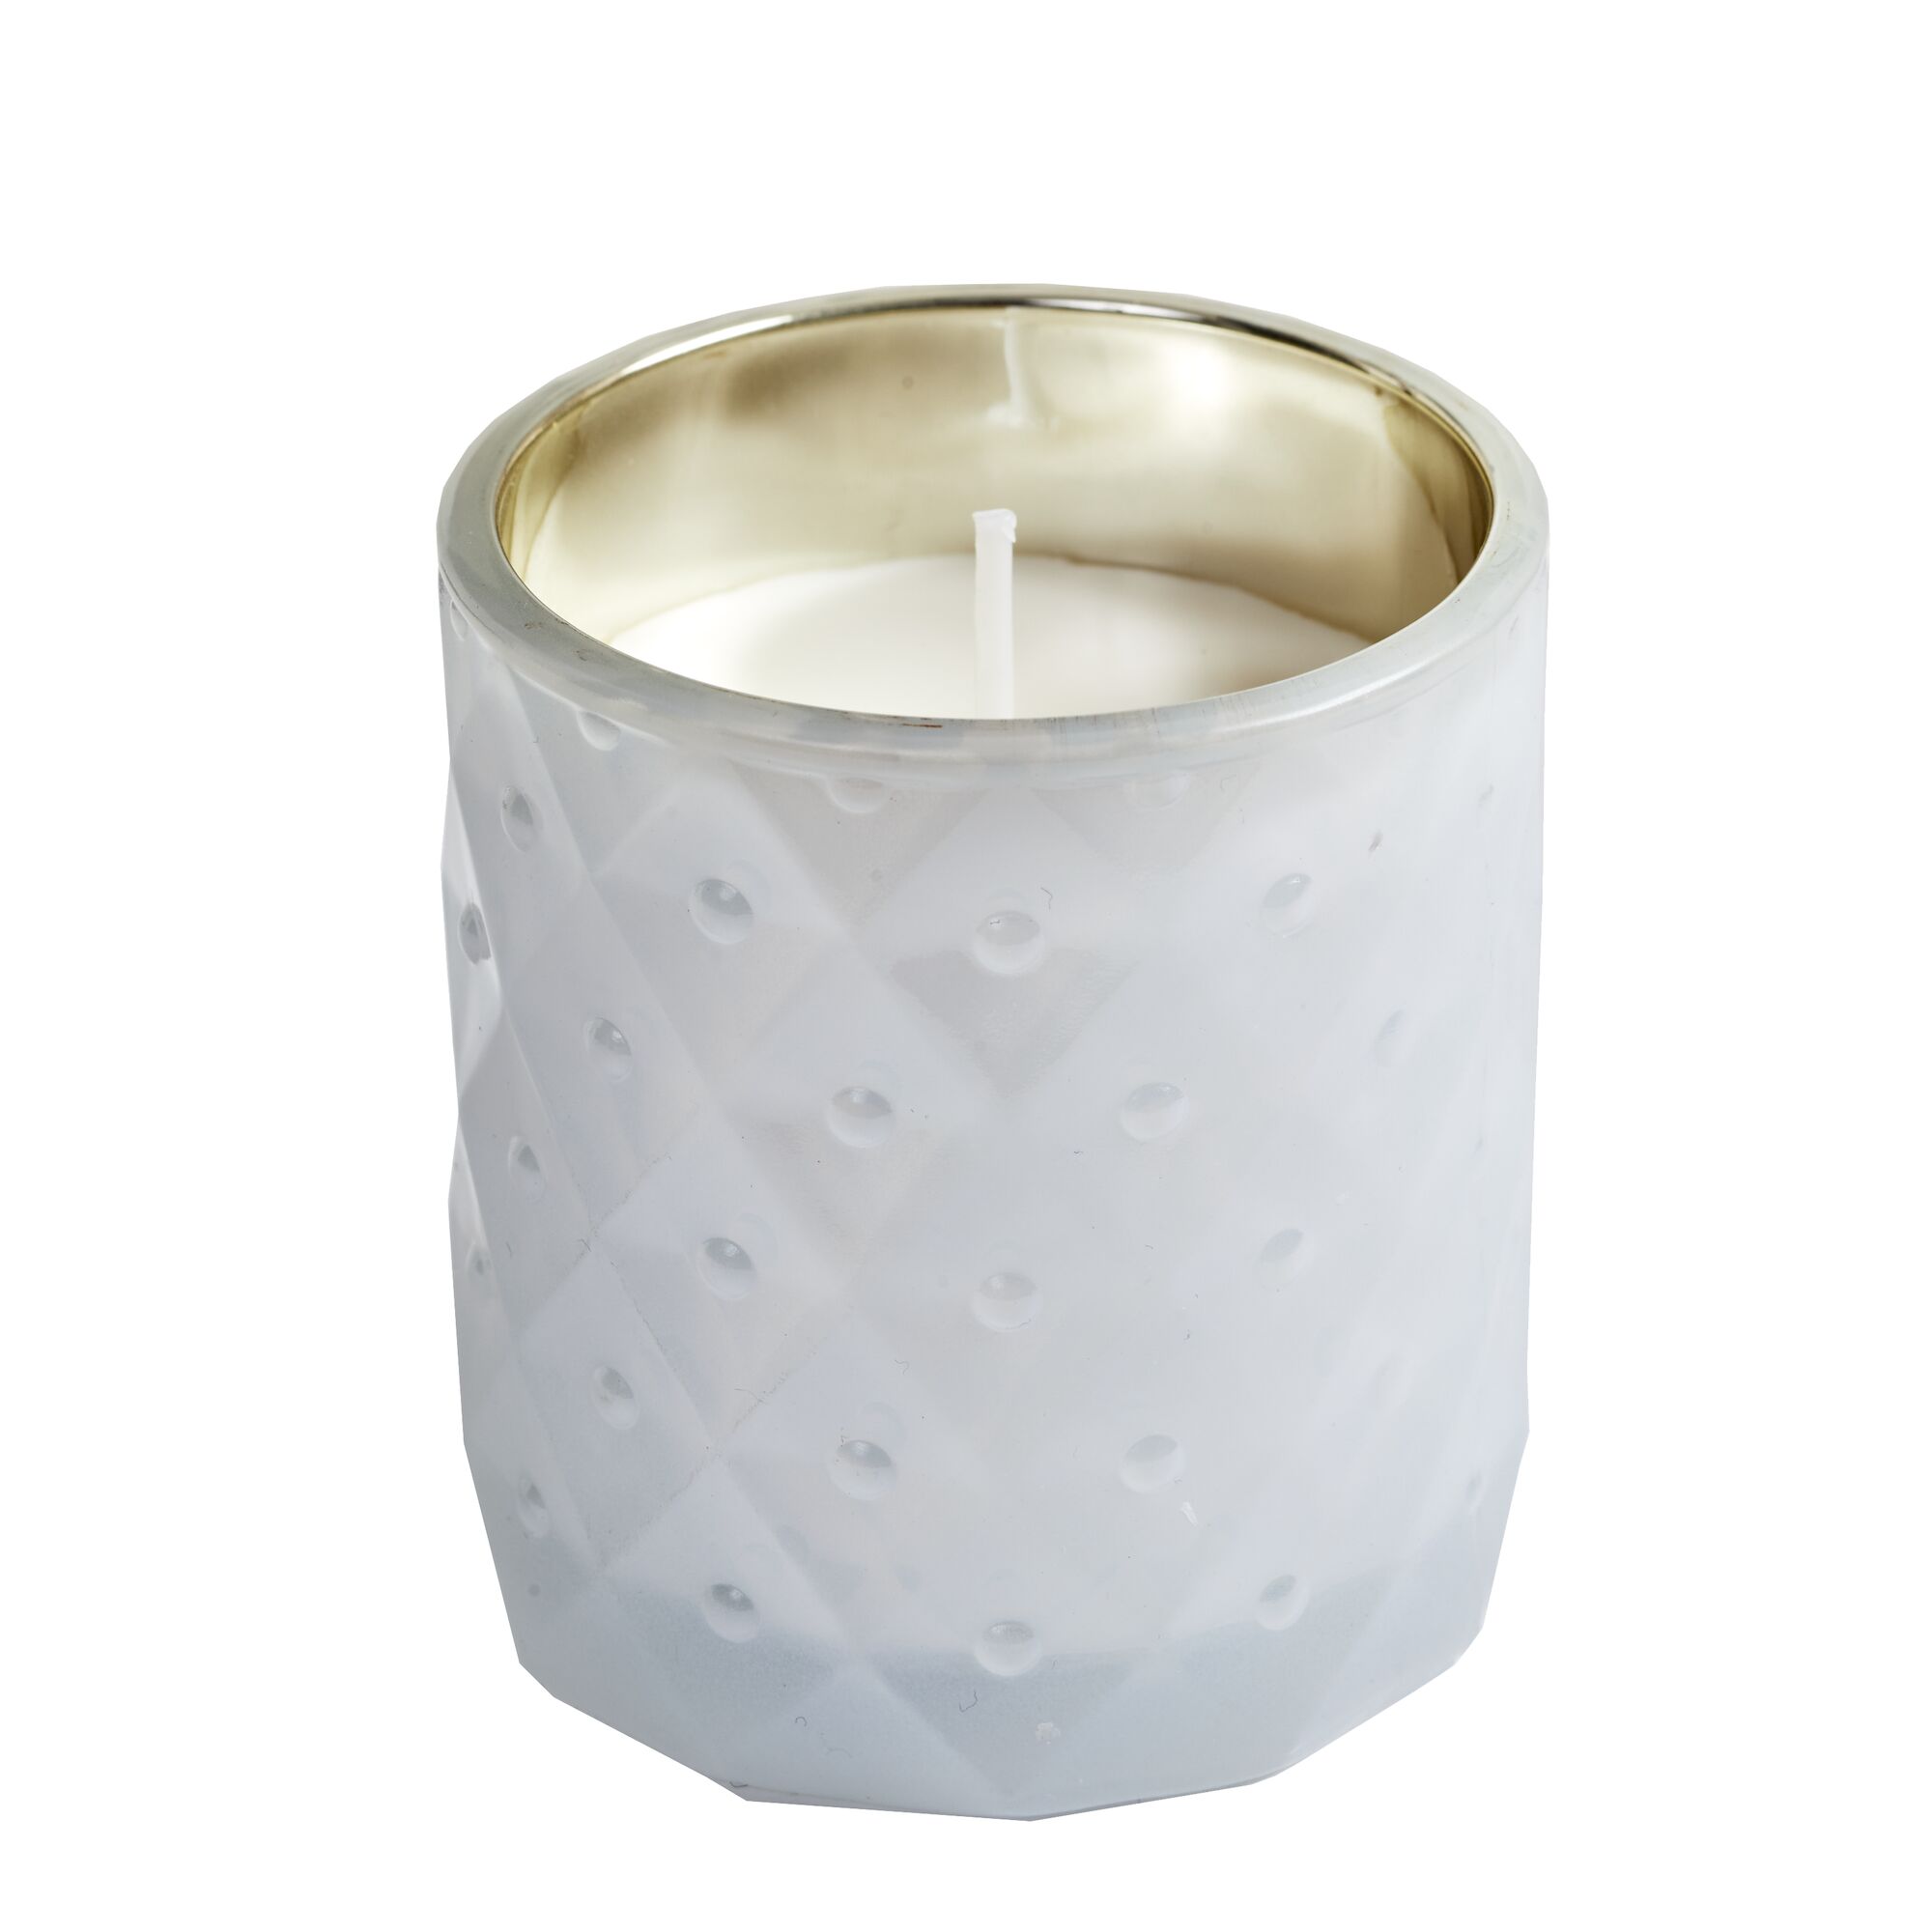 SPAAS Geruchlose Kerze im Weißes strukturierten Glas, ± 25 Stunden - Weiß